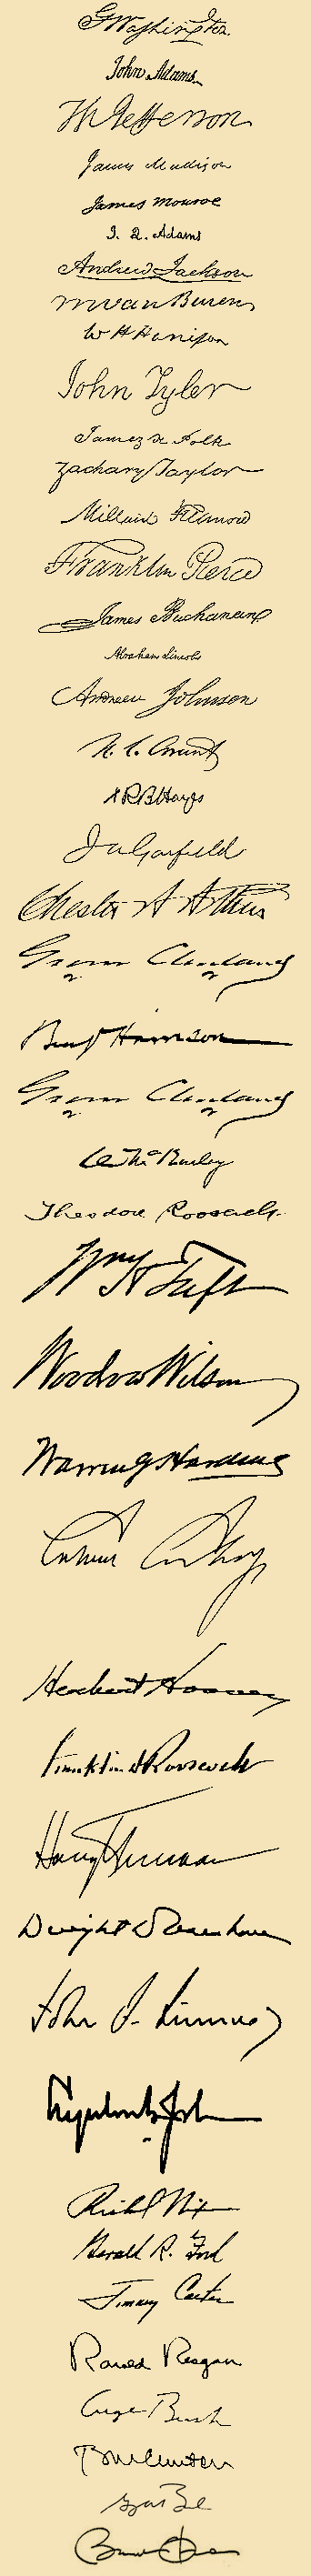 presidential signatures